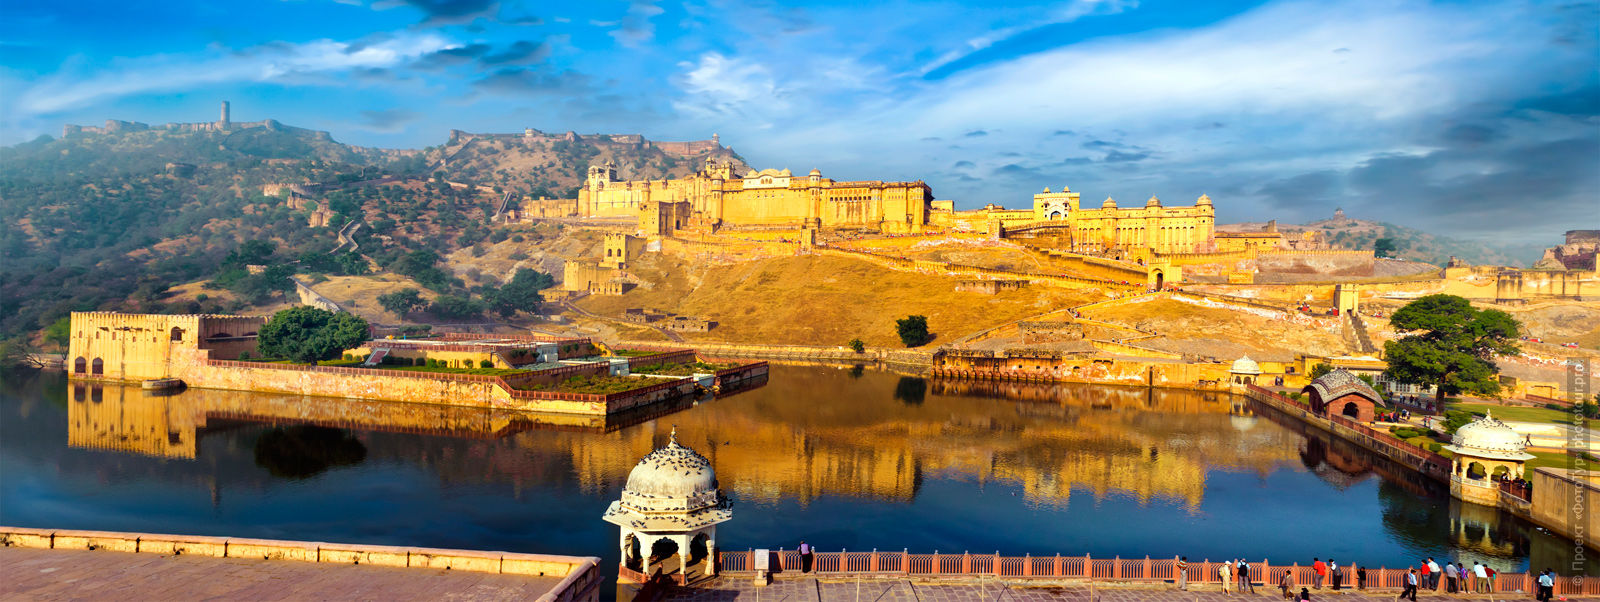 Розовый город Джайпур, Раджастан, тур по Золотому Треугольнику Индии.